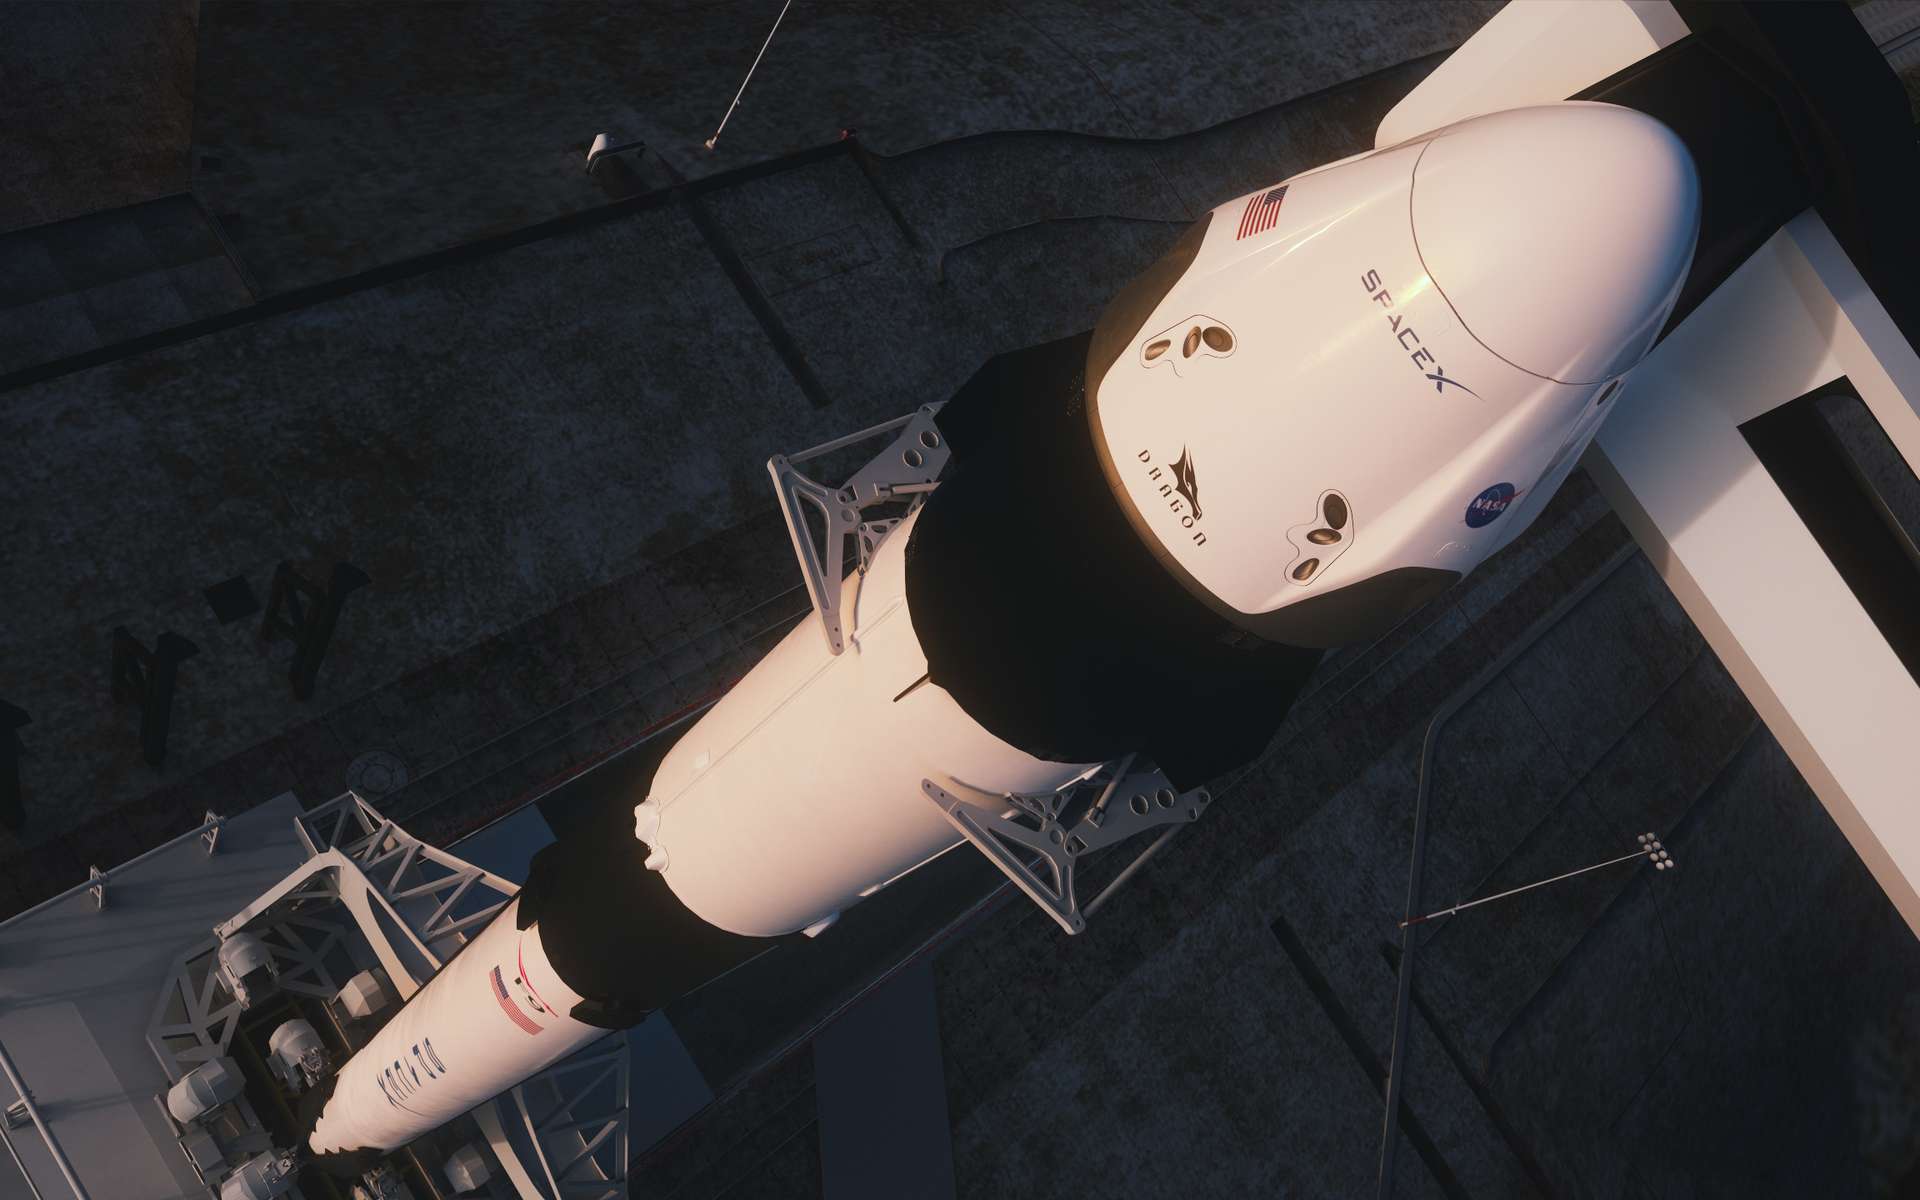 SpaceX : le test crucial pour la capsule Crew Dragon, c'est demain